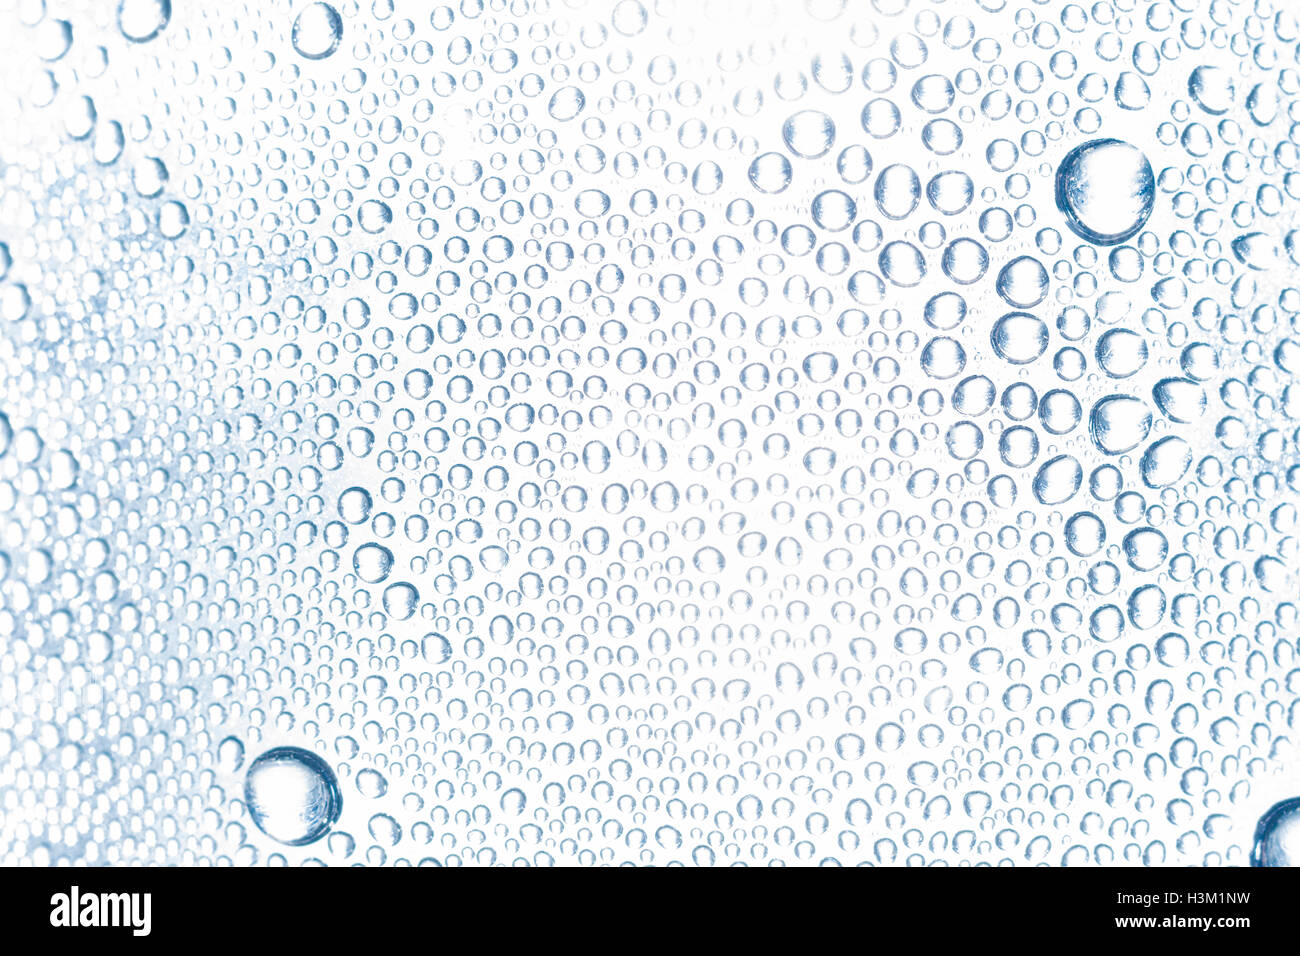 Abstraktes Bild von Perlen Kondenswasserbildung auf der Innenseite der PTFE-Flasche. Belichtung drückte geblasen zu geben - schauen Sie heraus. Wasser Tag Konzept. Stockfoto